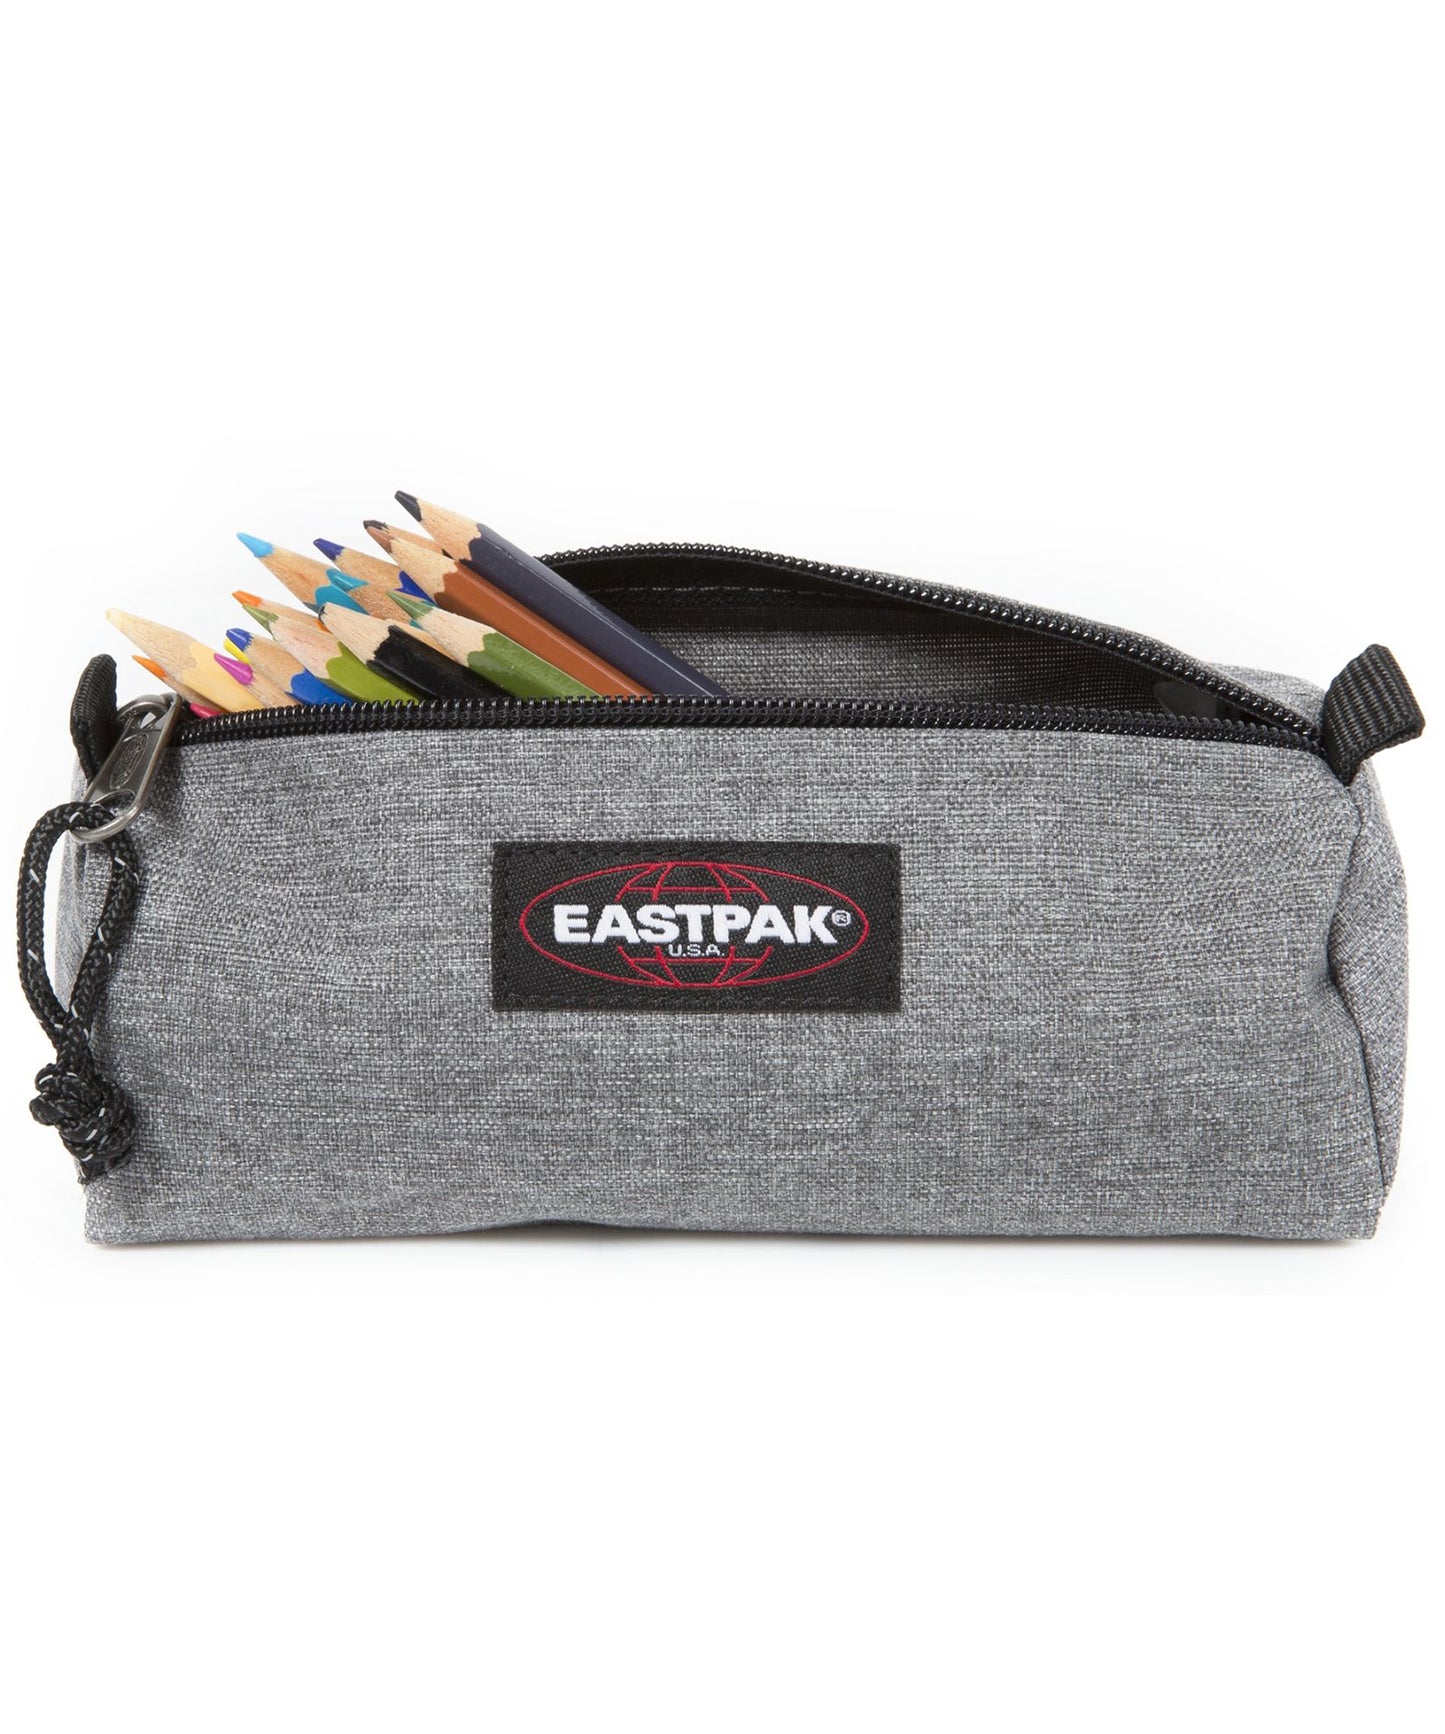 eastpak estuche benchmark de color gris claro, practico, sencillo, y duradero, cierre con cremallera.